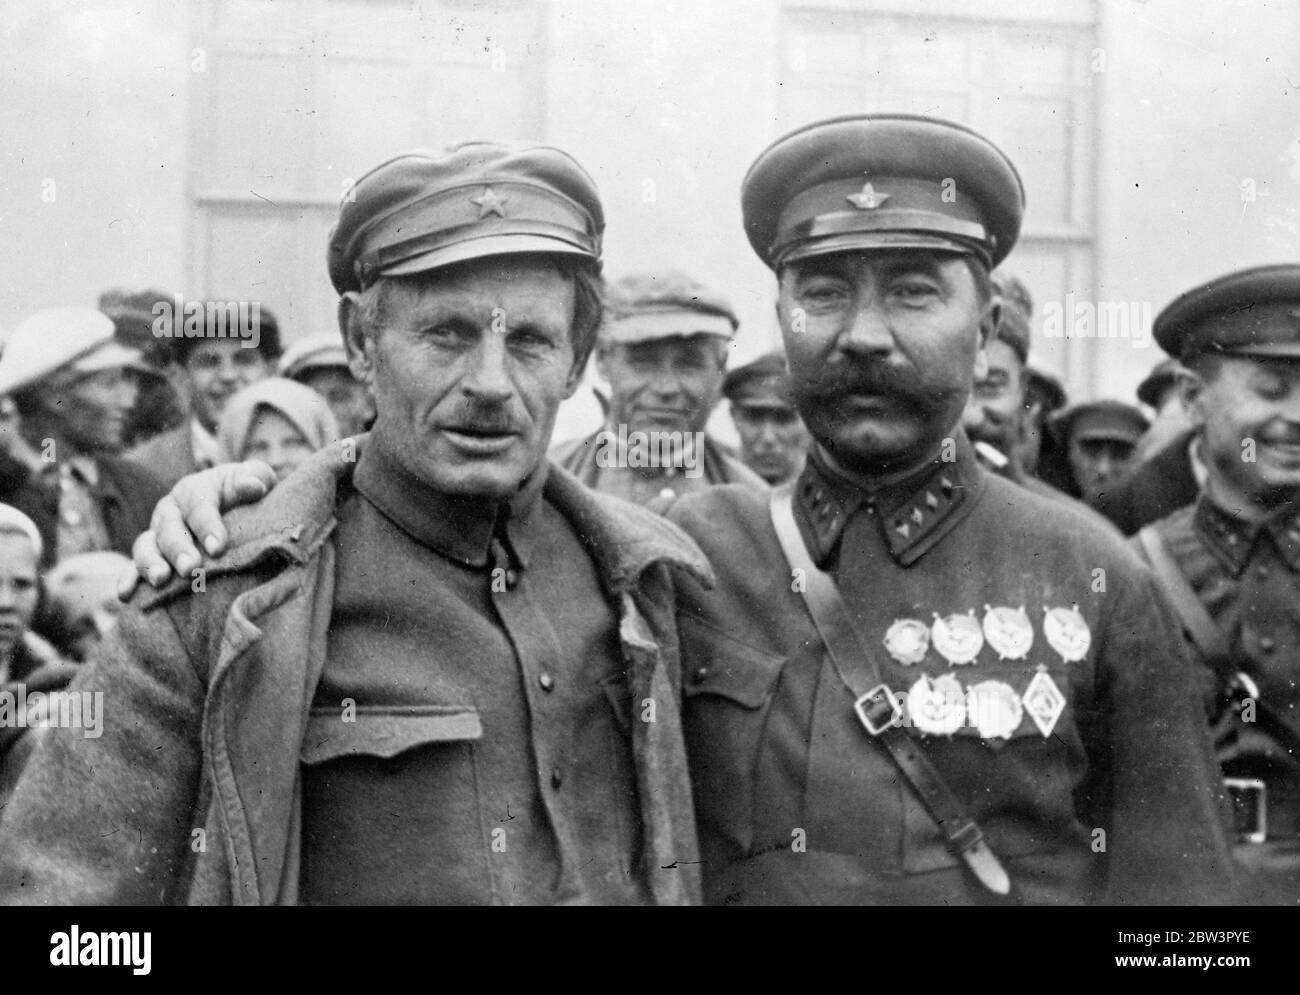 Berühmter russischer Kavallerieführer trifft einen alten Kameraden. S i Budyonny, der berühmte Führer der Kavallerie (rechts) mit Kirssnov, sein ehemaliger Kamerad bei den Jubiläumsfeiern. 26. November 1935 Stockfoto